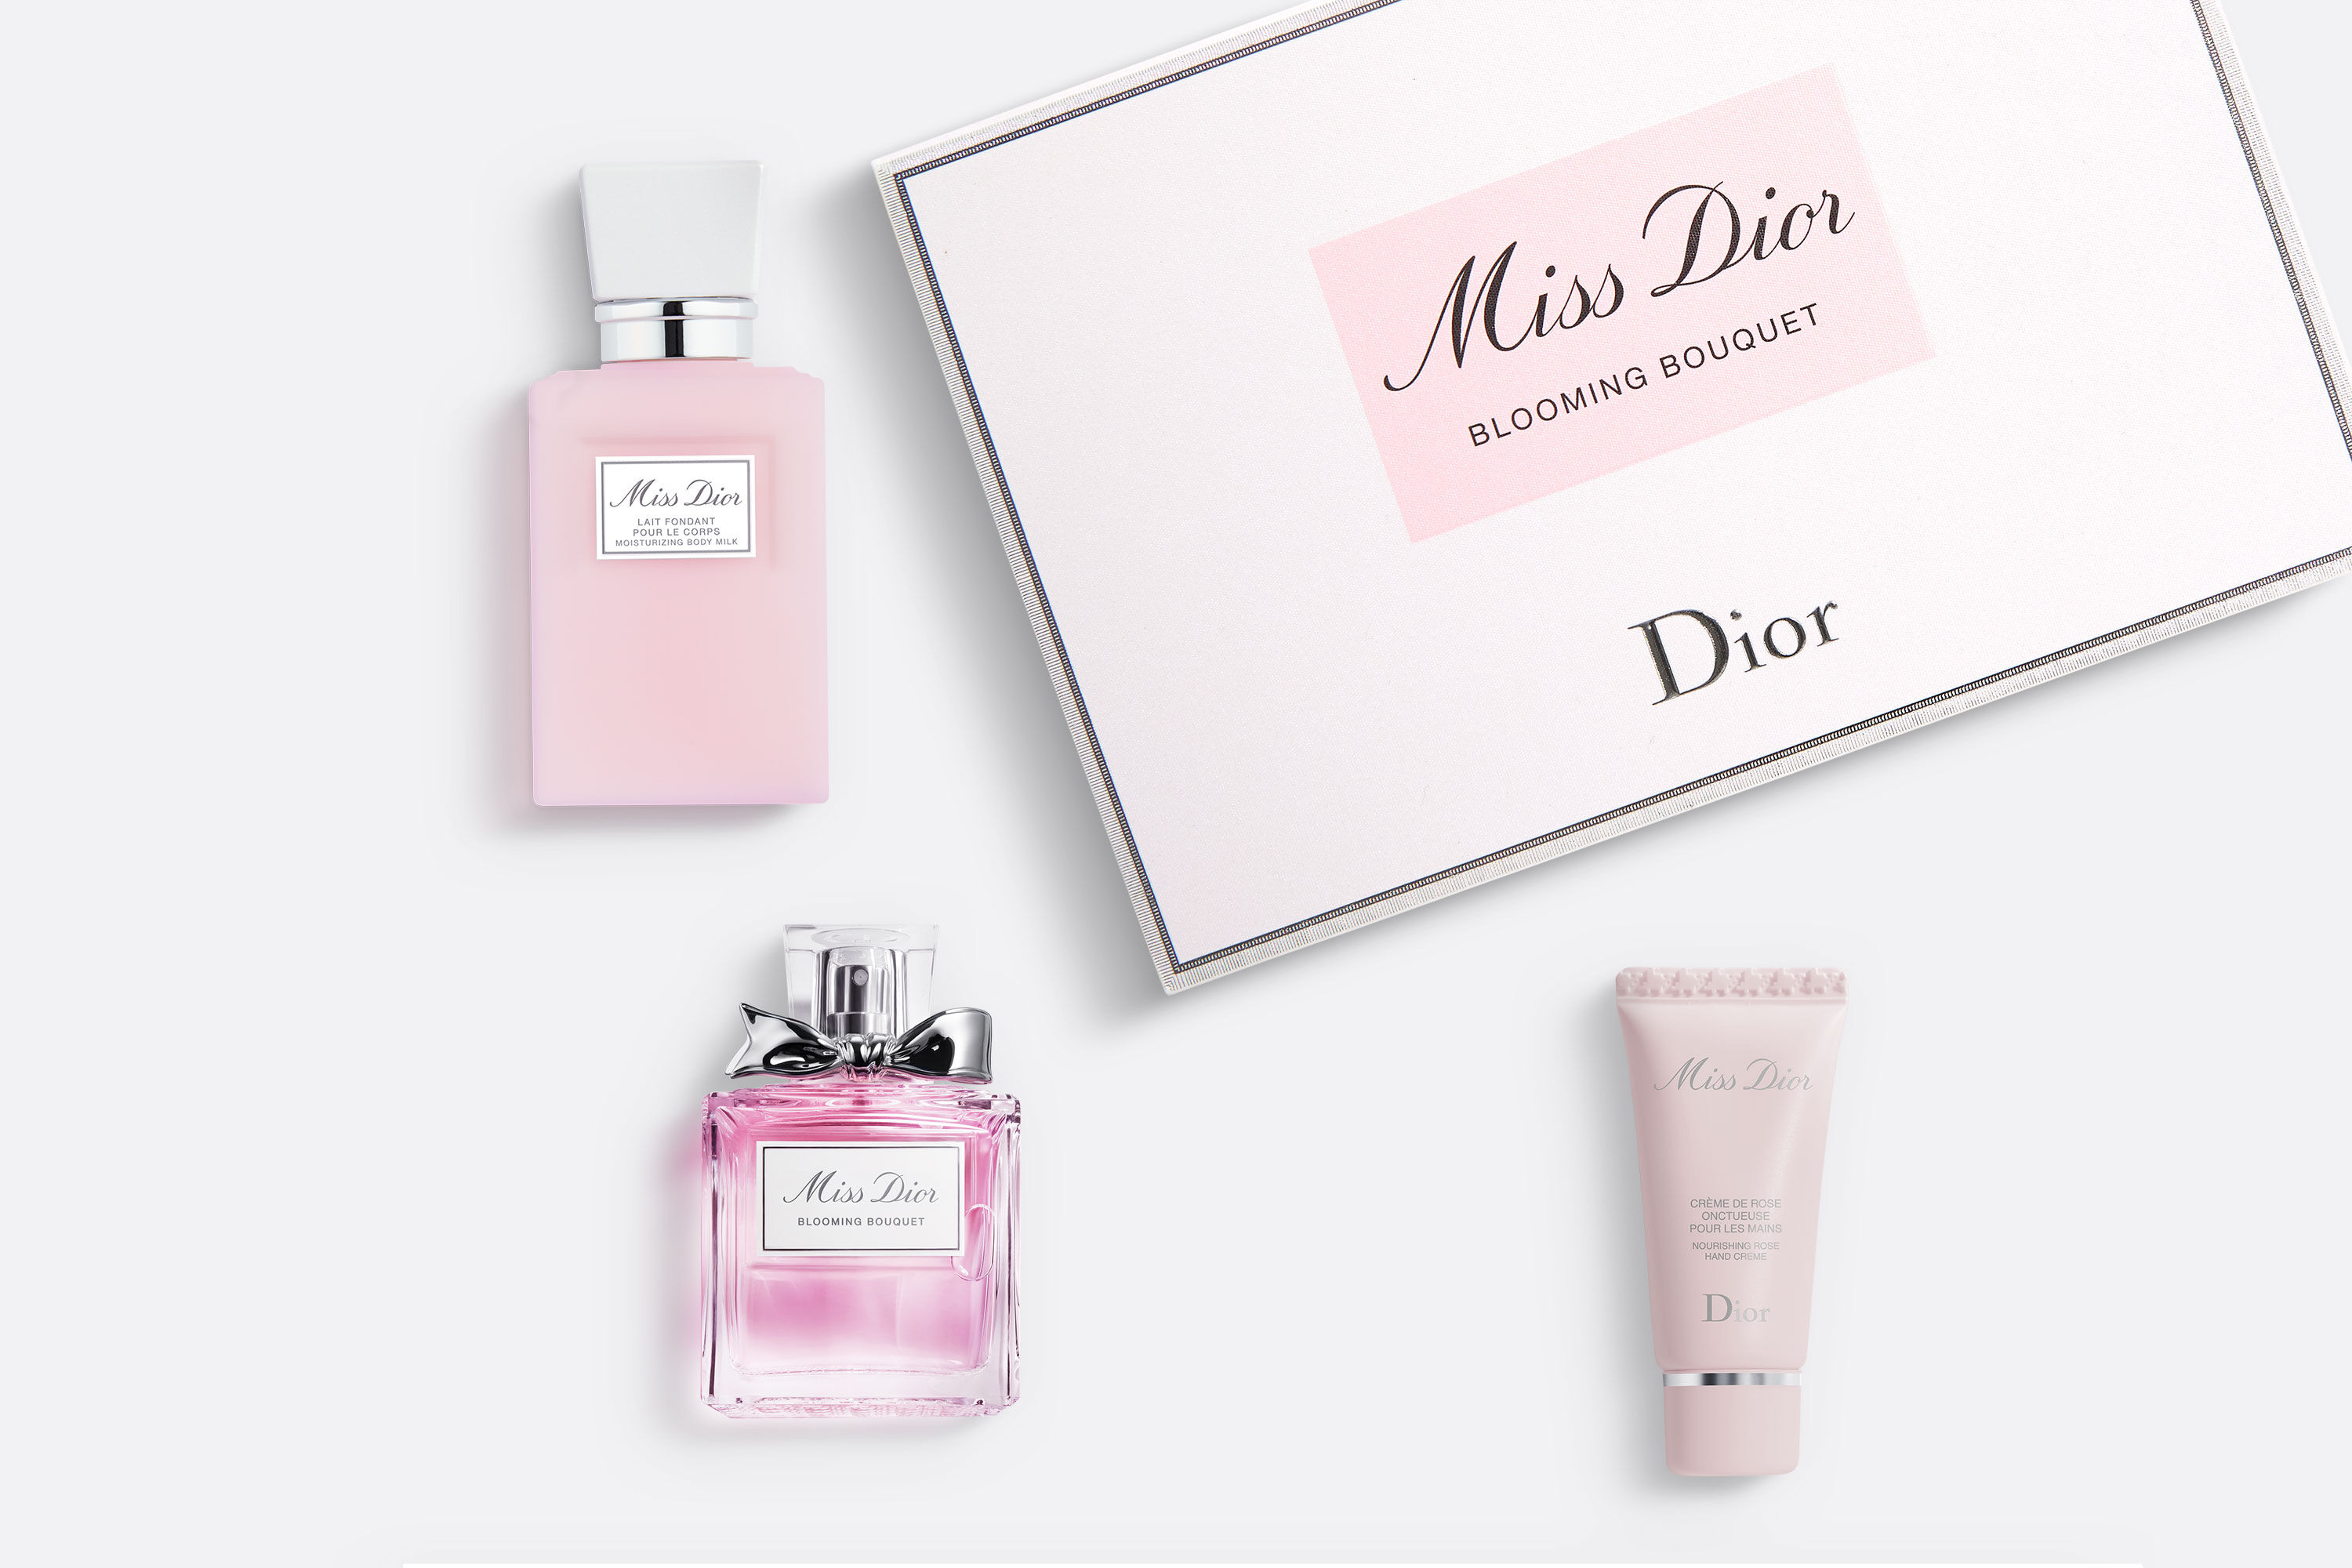 DIOR 3Pc Miss Dior Blooming Bouquet Eau de Toilette Gift Set  Macys